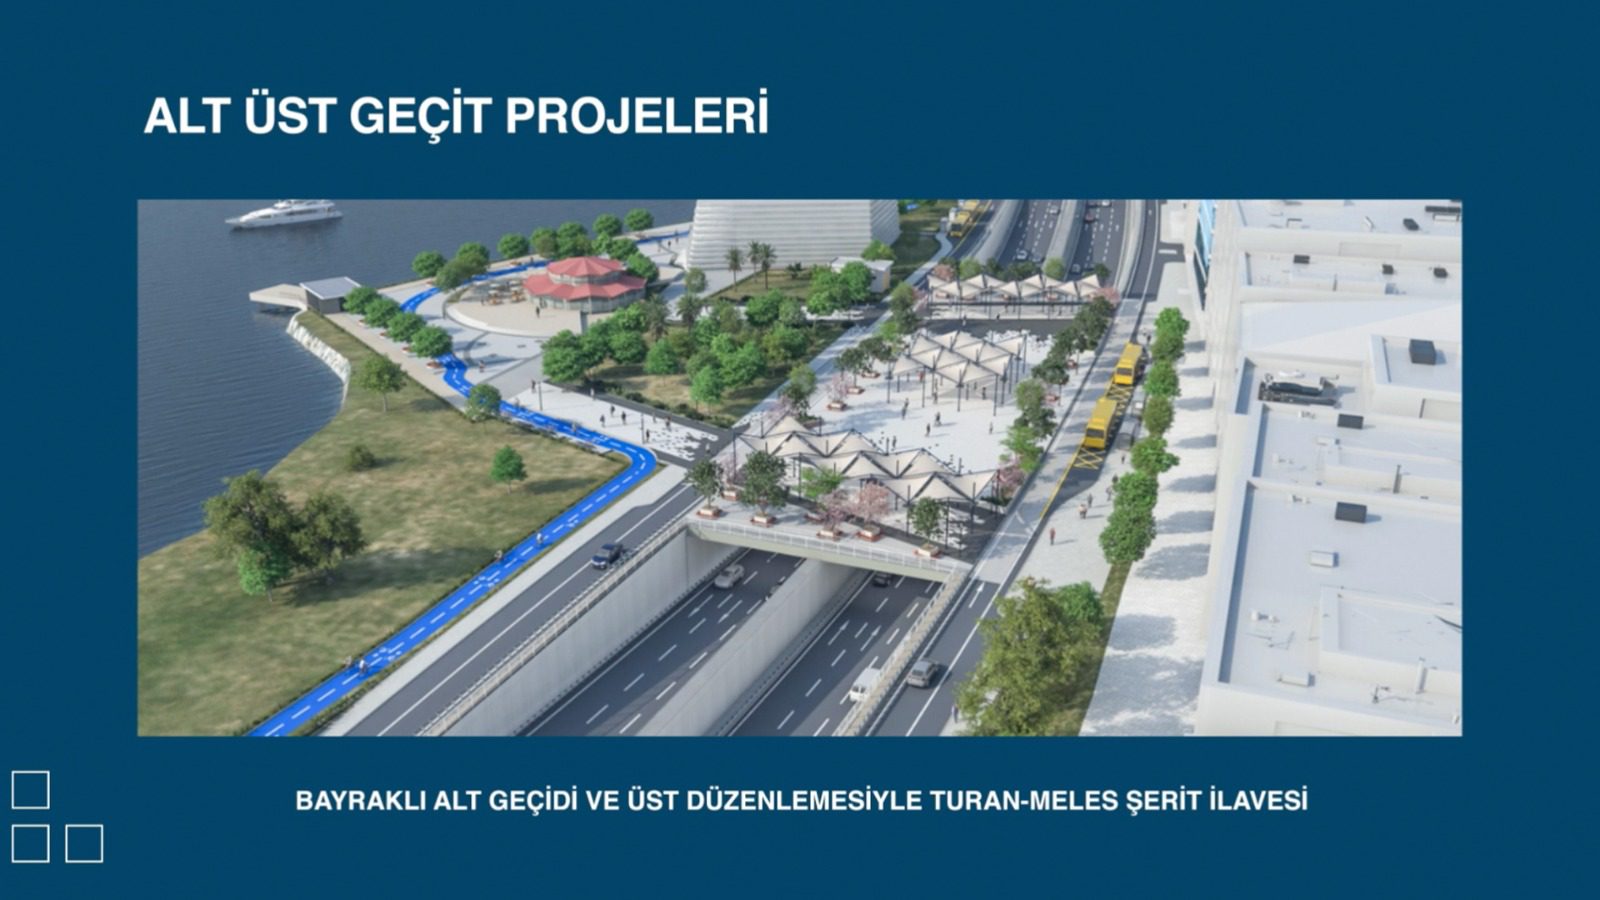 Başkan Cemil Tugay,  projelerini “İzmir Geleceğe Doğru” sloganıyla açıkladı